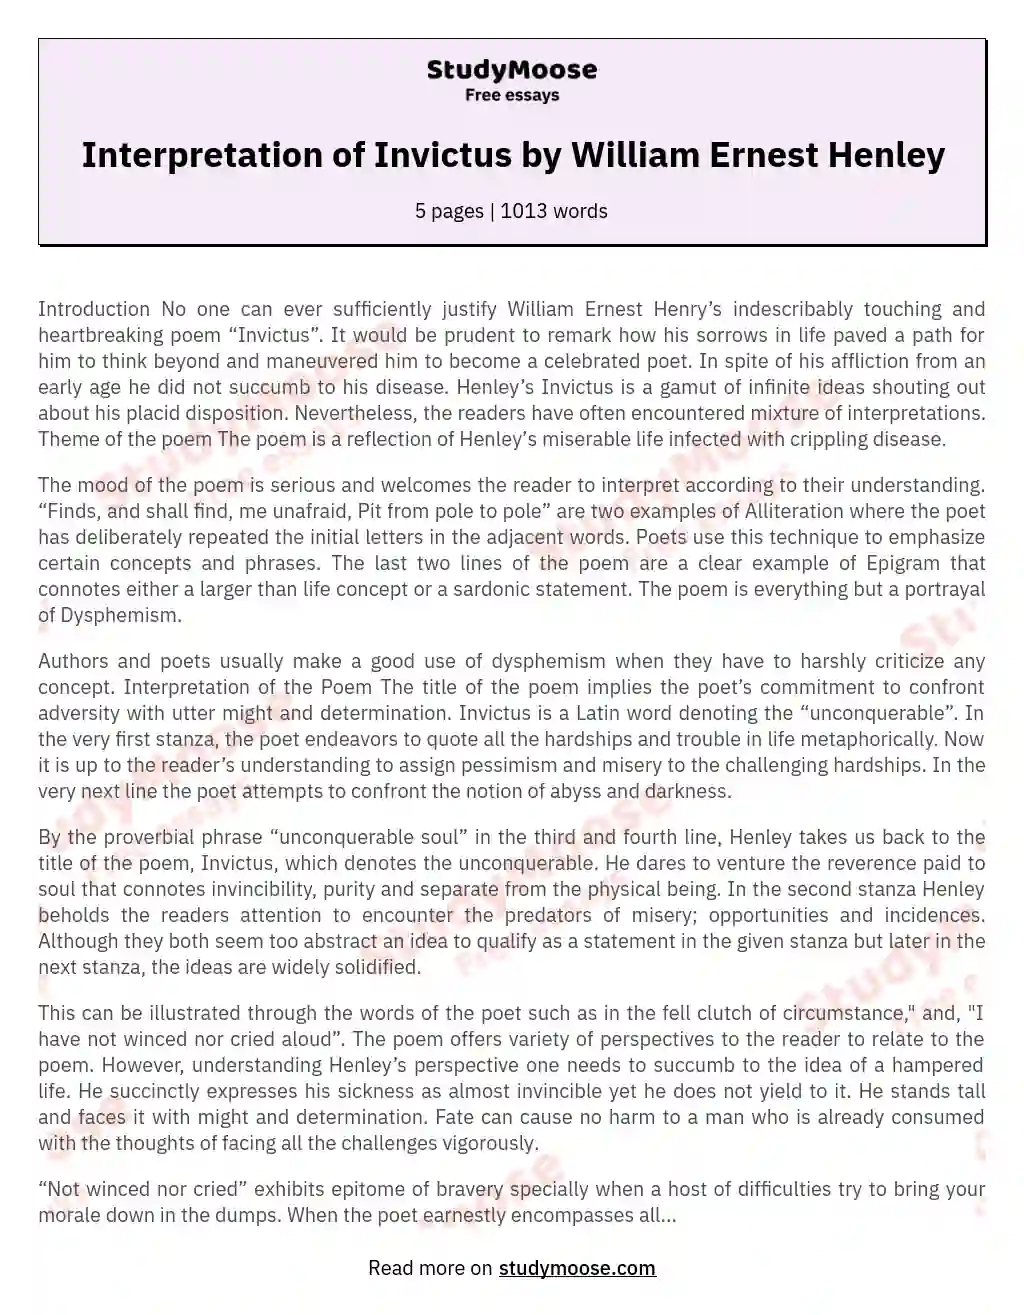 Interpretation of Invictus by William Ernest Henley essay